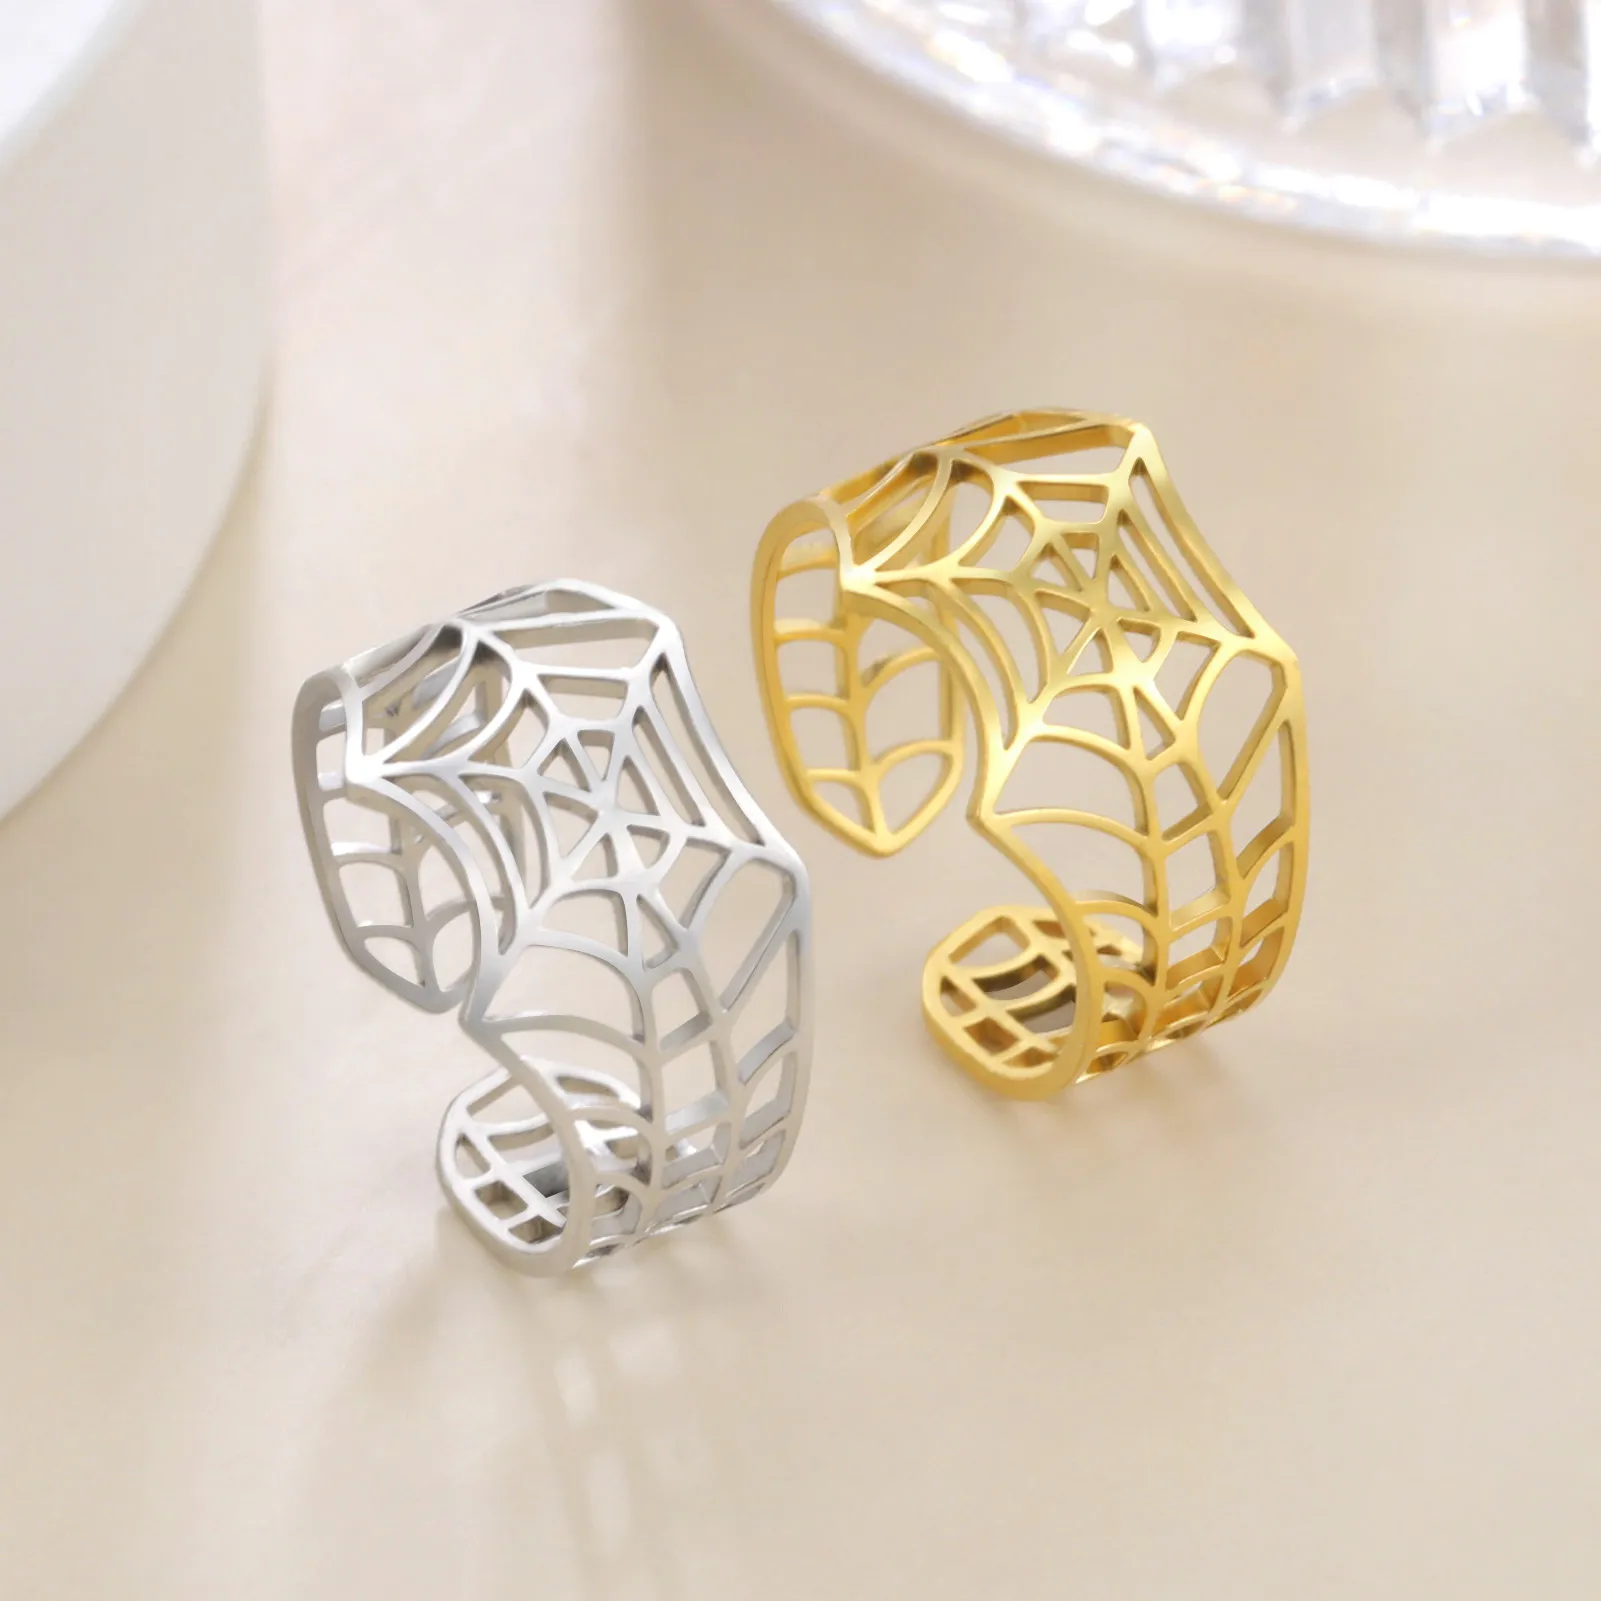 Pierścień Spiderman Regulowany stal nierdzewna Pierścień Spider Pierścień Złote Srebrny kolor stylowy prezent biżuterii z hurtowym pudełkiem i obsługiwane kropelki